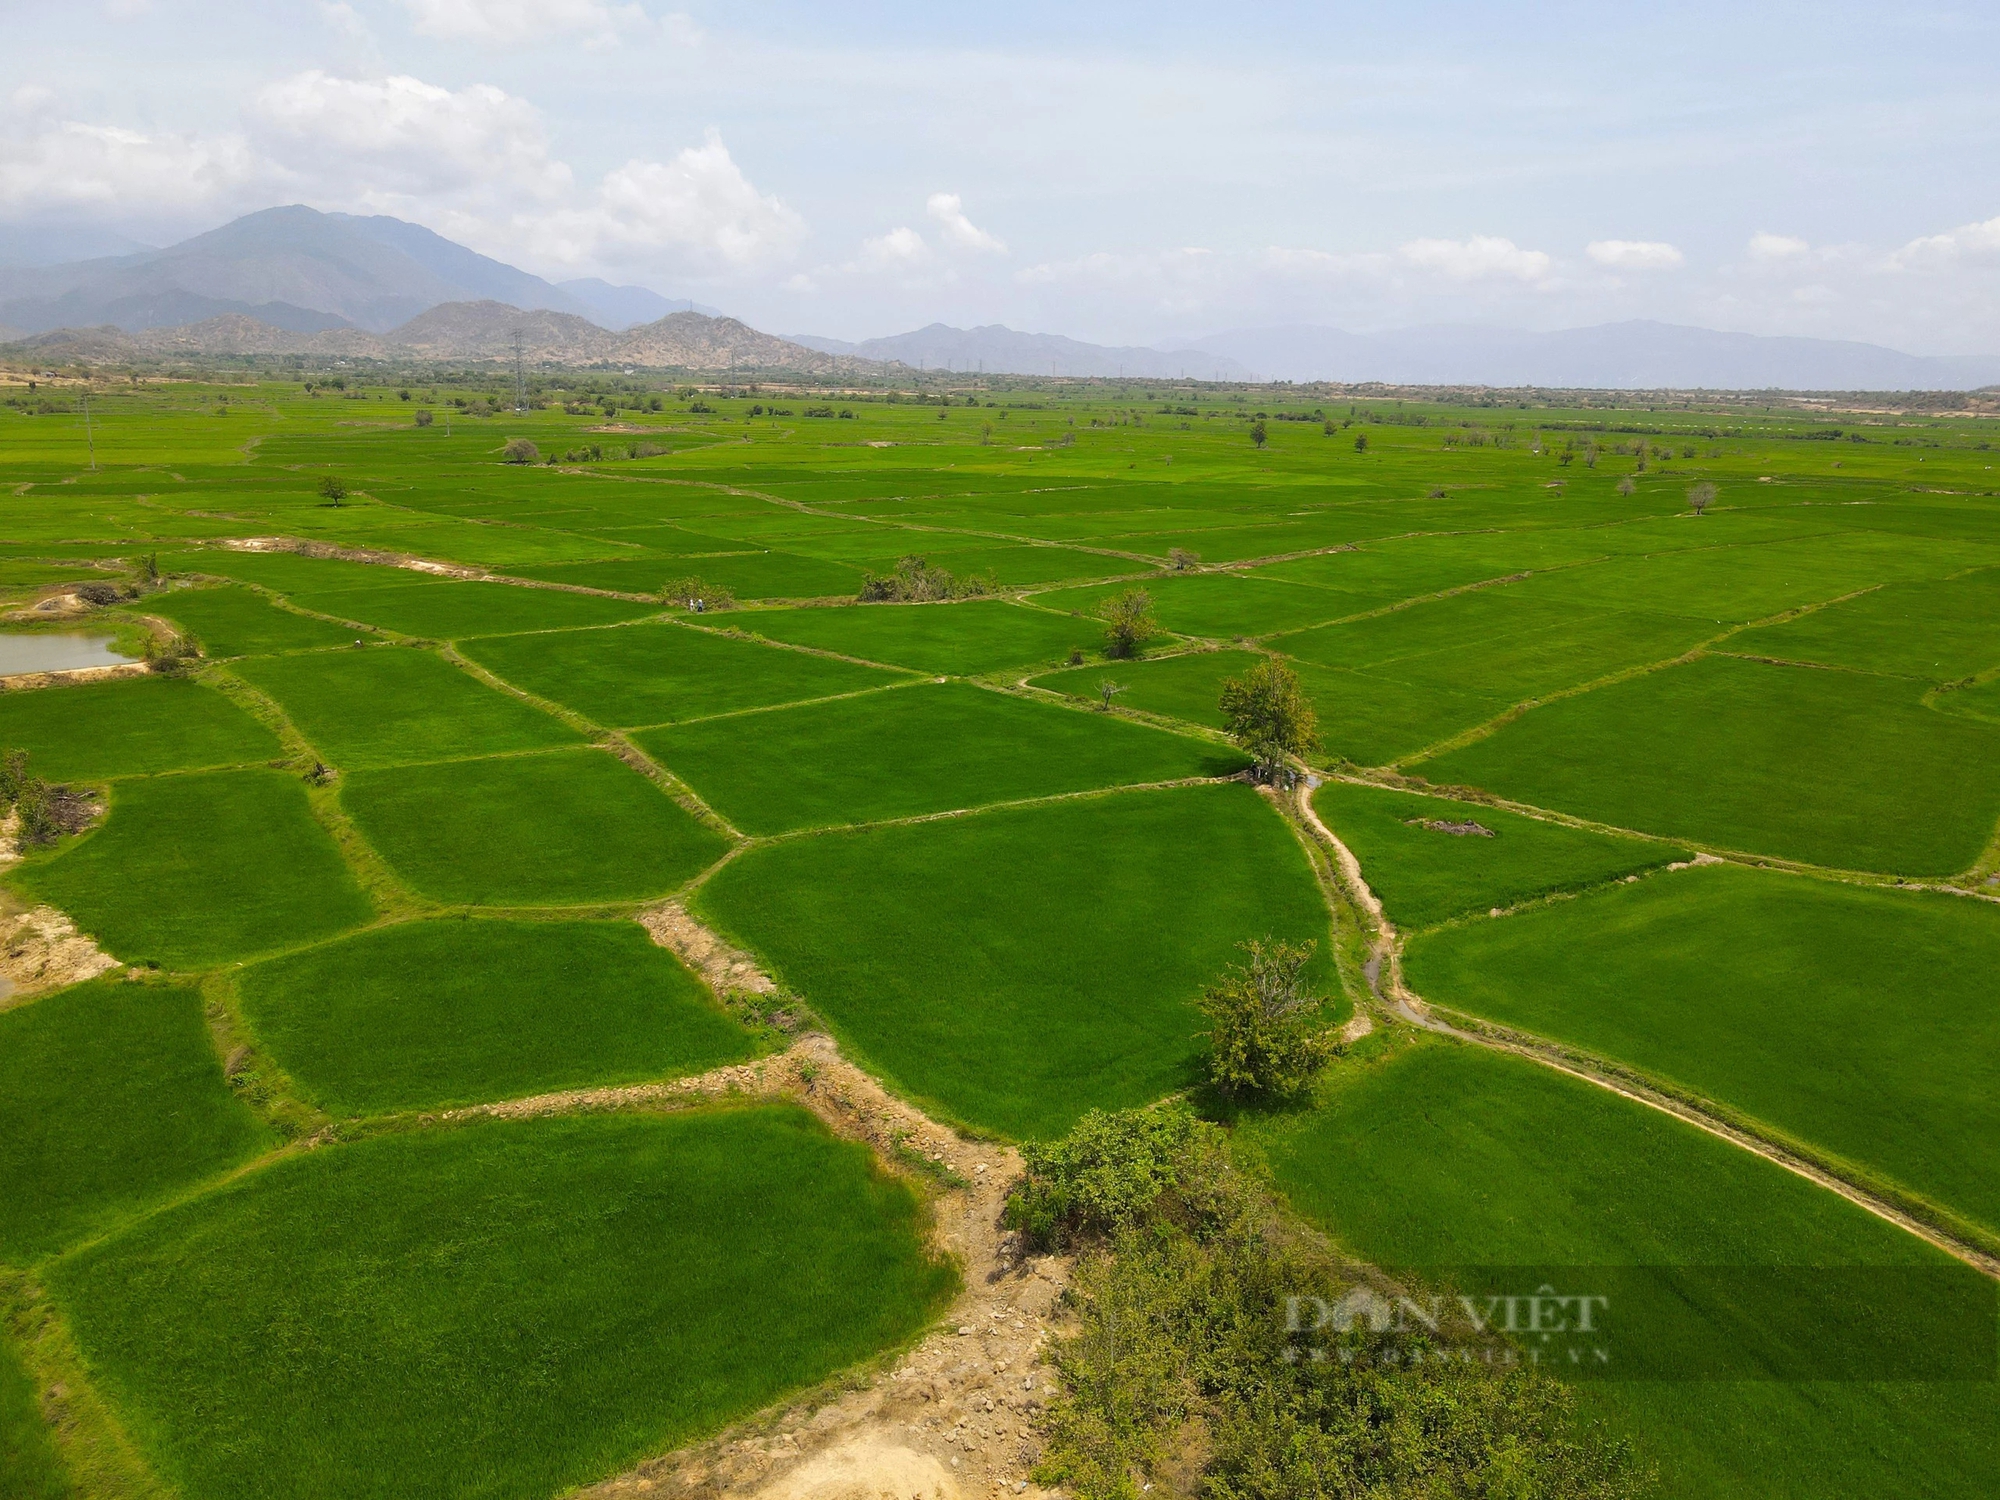 Nước từ công trình thủy lợi hiện đại nhất Việt Nam đi đến đâu, cánh đồng ở Ninh Thuận xanh đến đó - Ảnh 4.